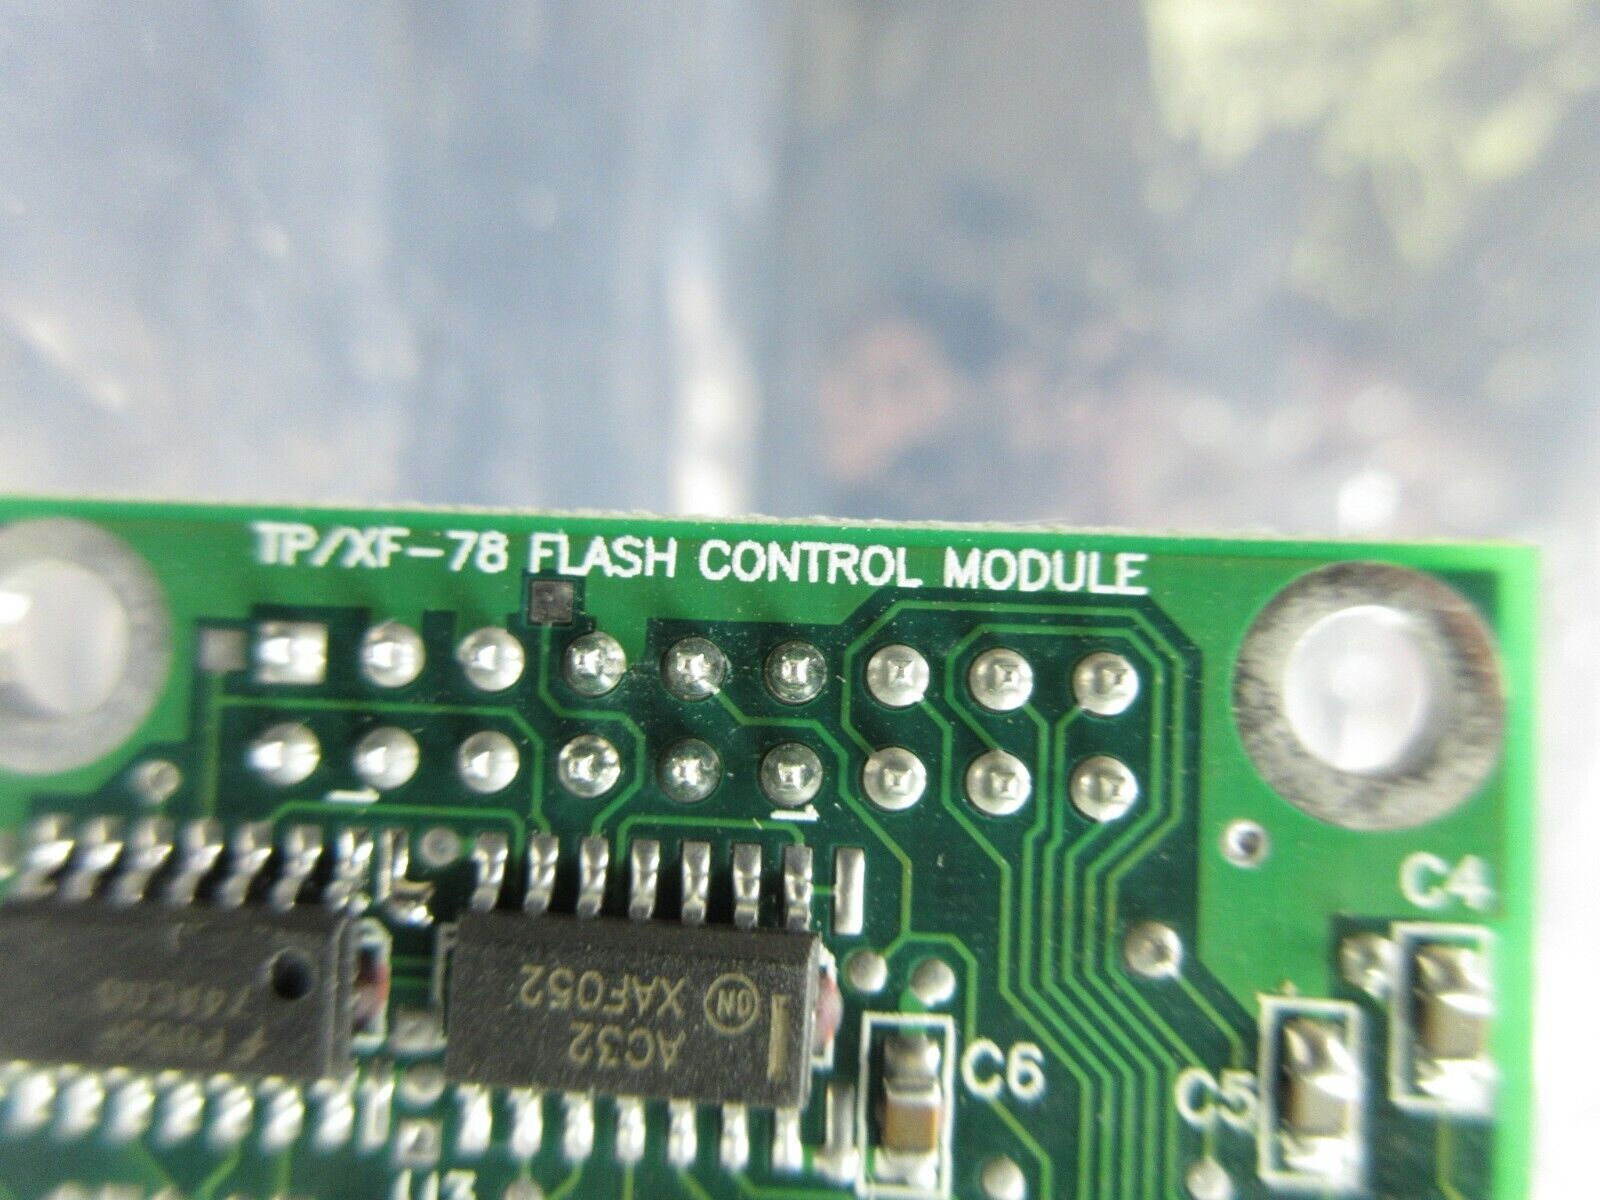 Echelon 375-0224-01 Flash PCB TP/XF-78 Nim Pump Edwards 801-1047-01 im Working